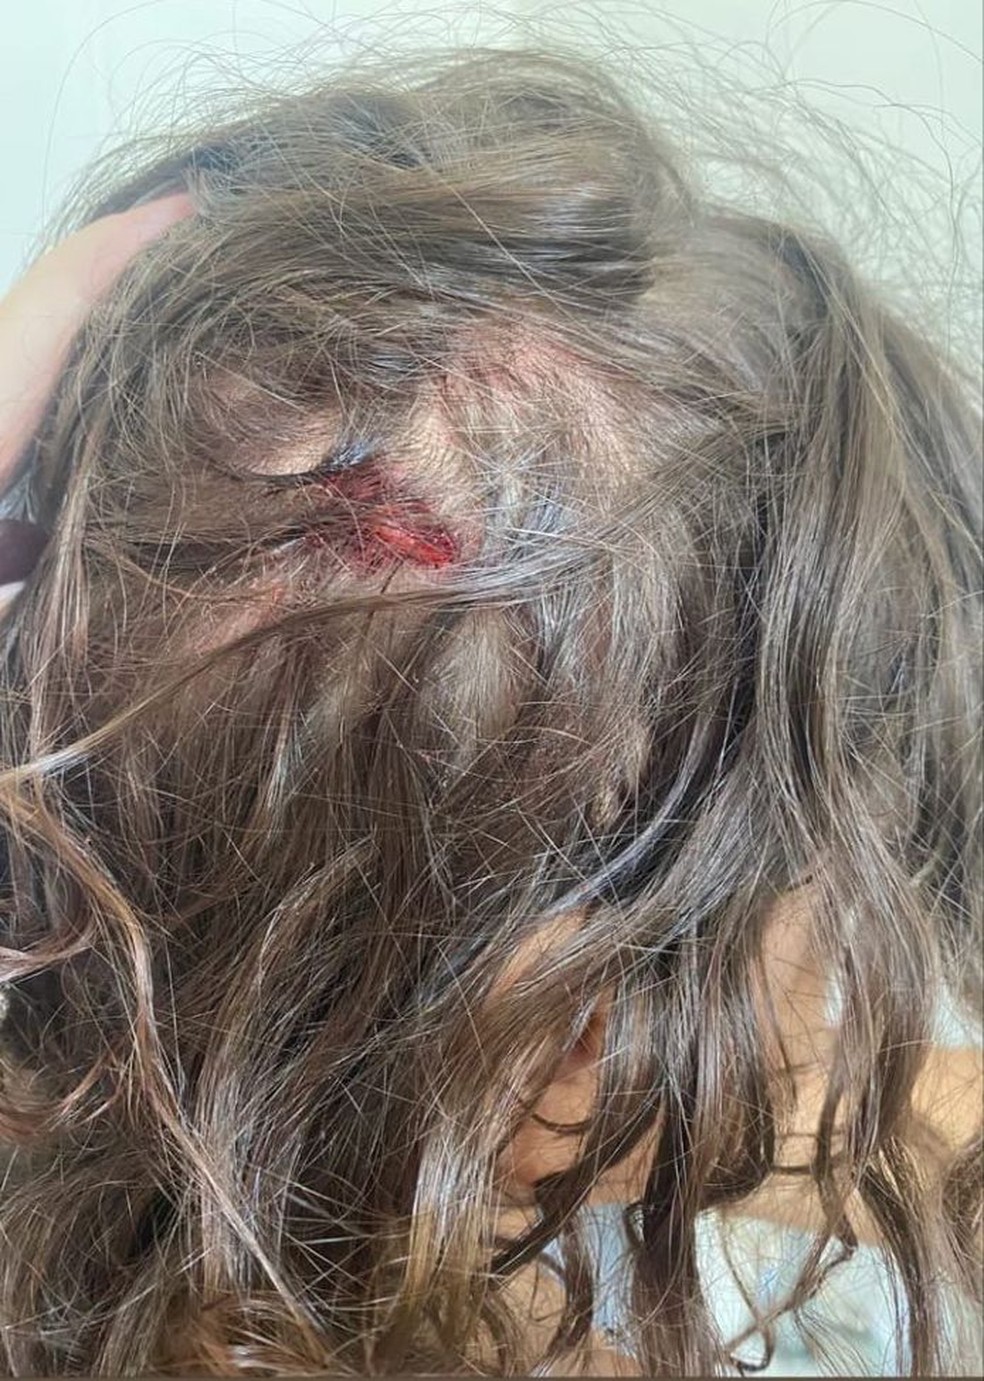 Criança teve corte profundo e precisou de pontos na cabeça — Foto: Arquivo pessoal 